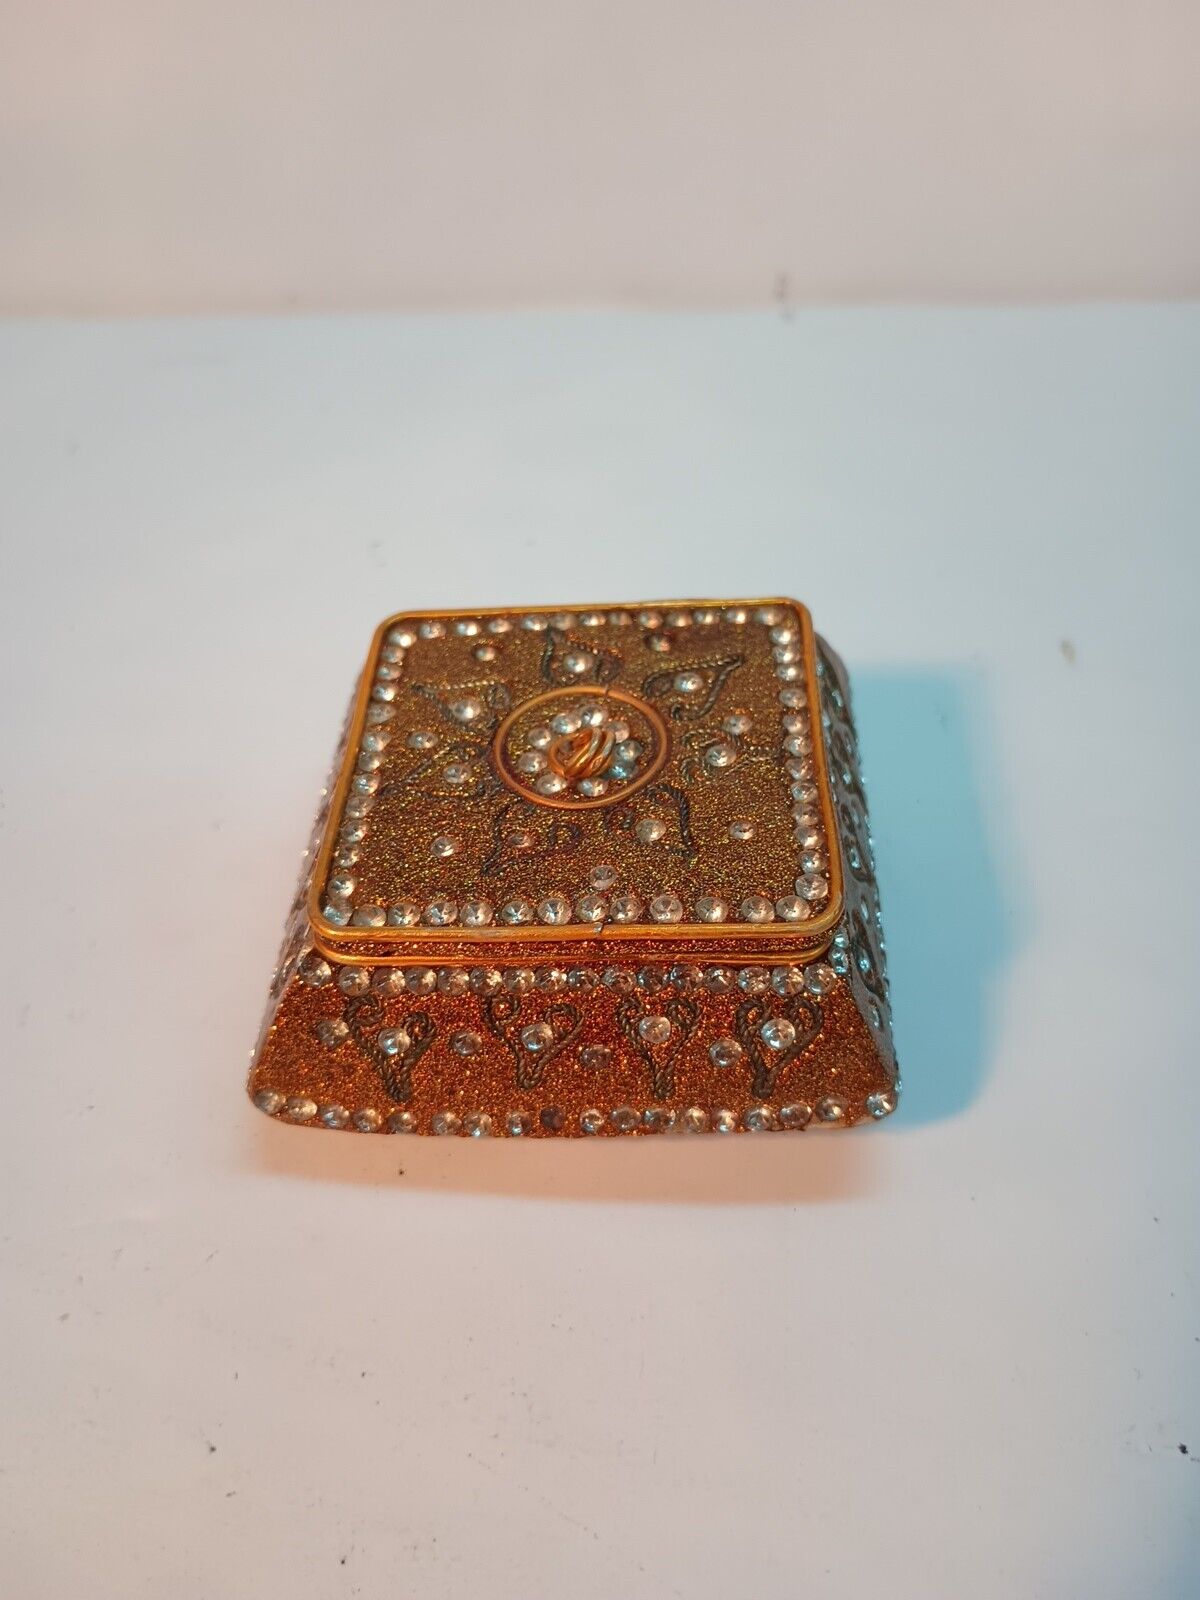 (1) Copper jewel trinket box unusual interesting copper trim 1.5” tall x 3” wide